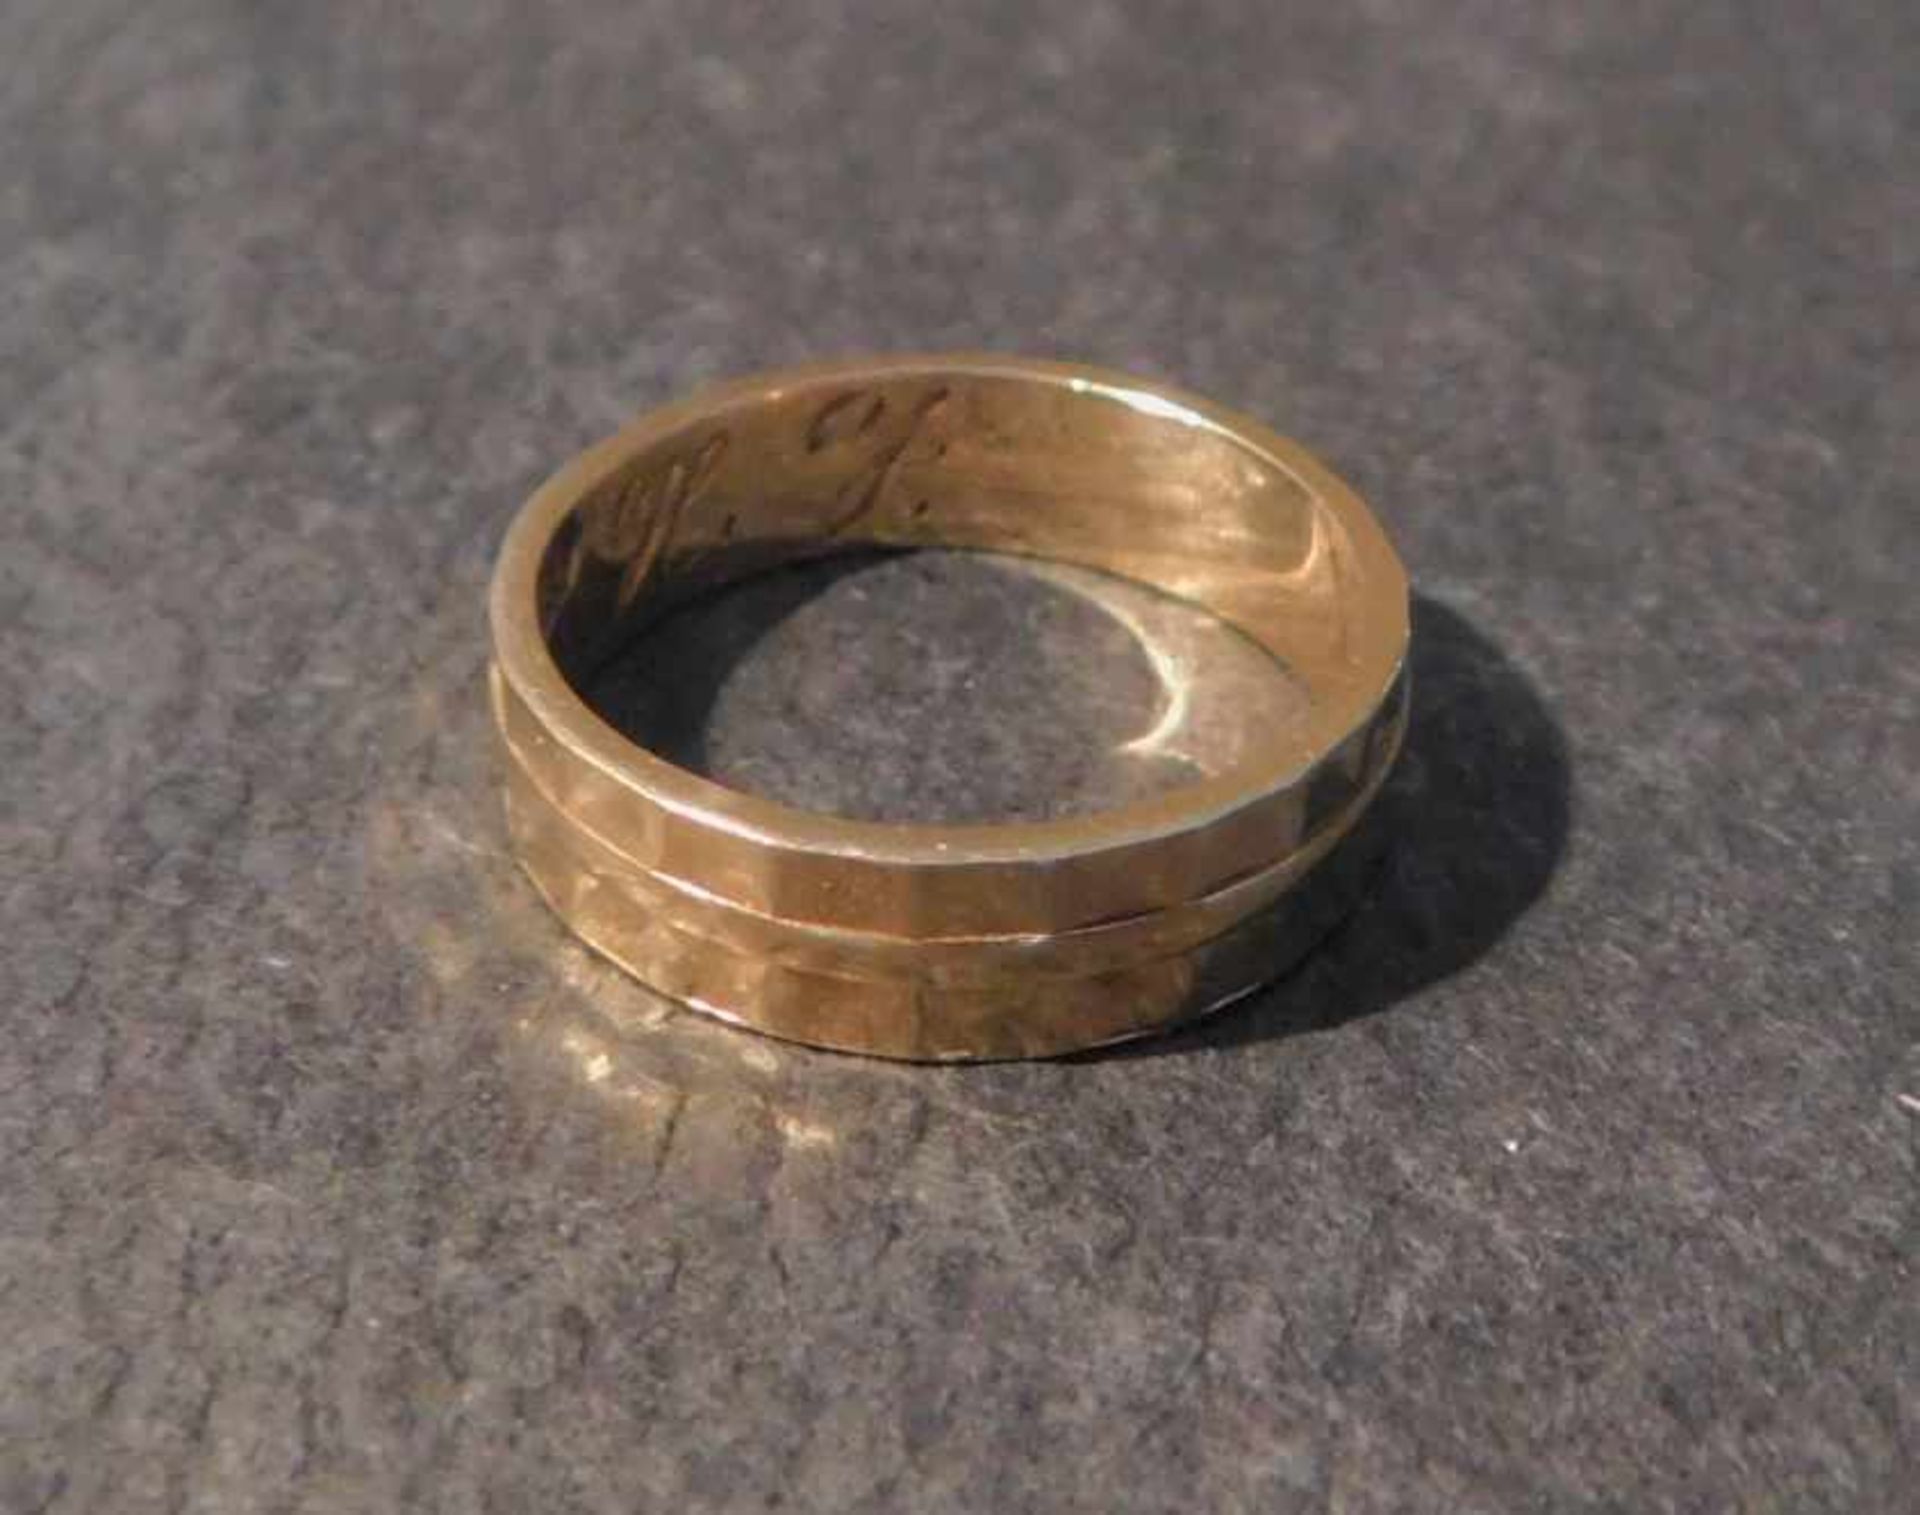 Herrenring, 585 Gelbgold, 3,8 g, Ringgröße 54,innen mit Initialen versehen, H.J. - Bild 2 aus 3